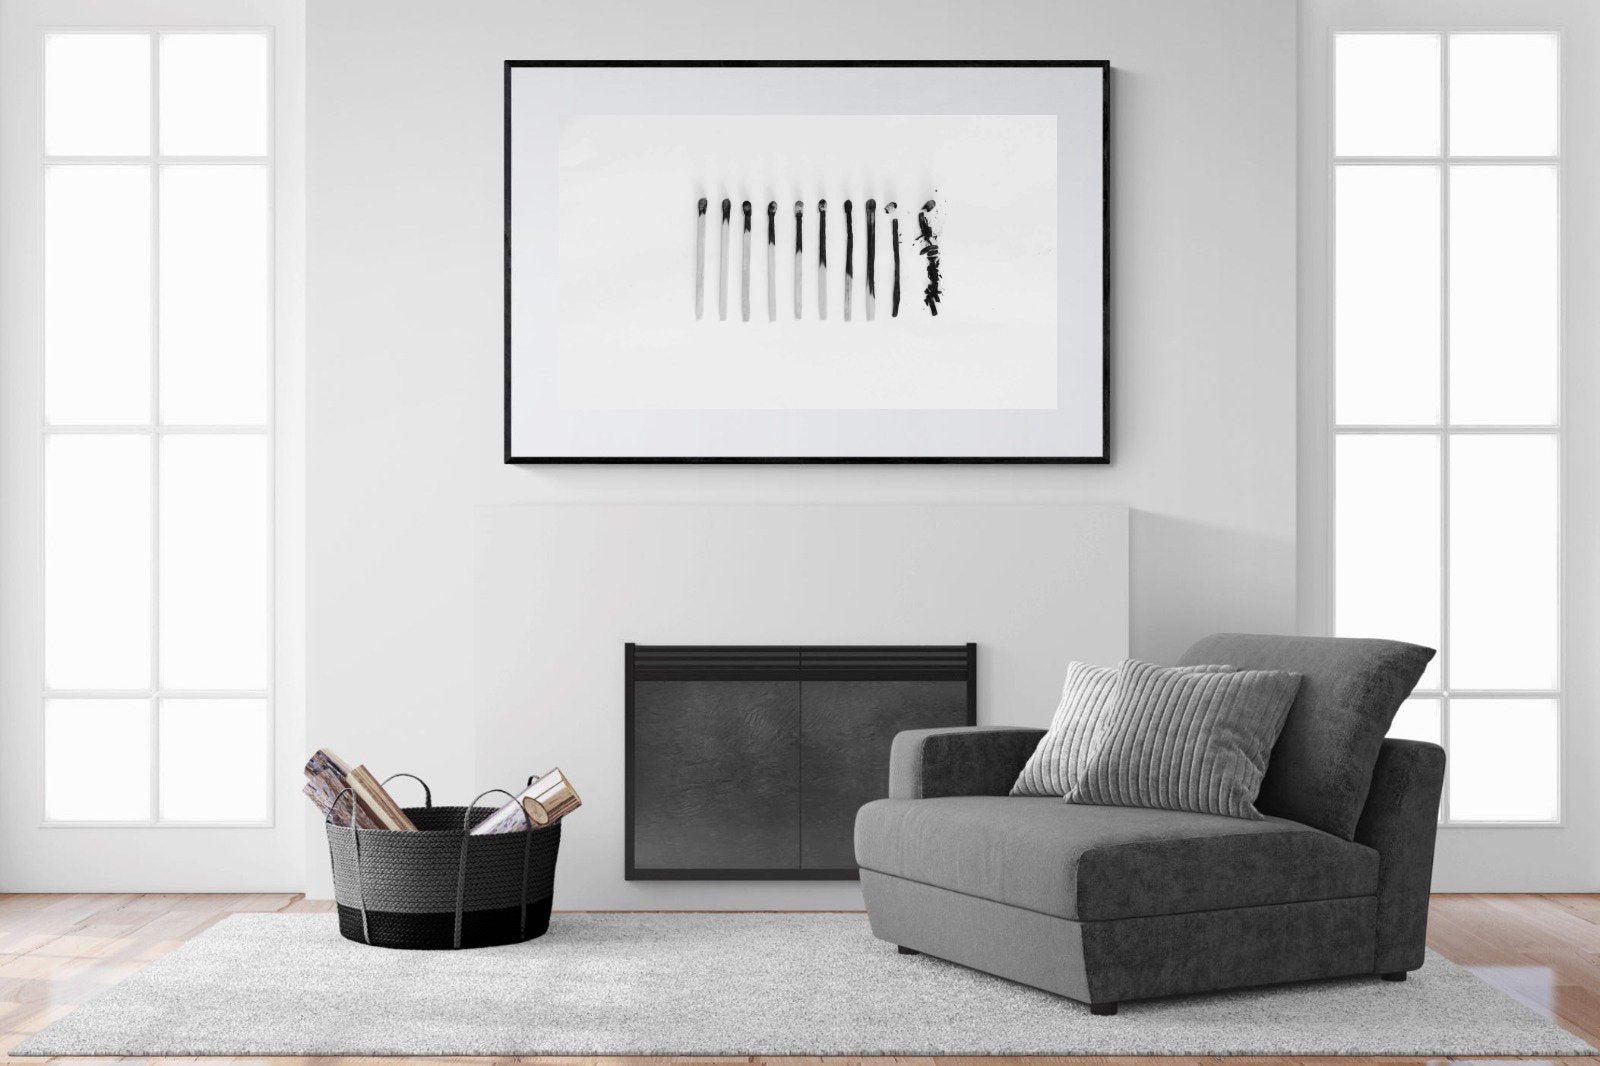 Matchsticks-Wall_Art-150 x 100cm-Framed Print-Black-Pixalot